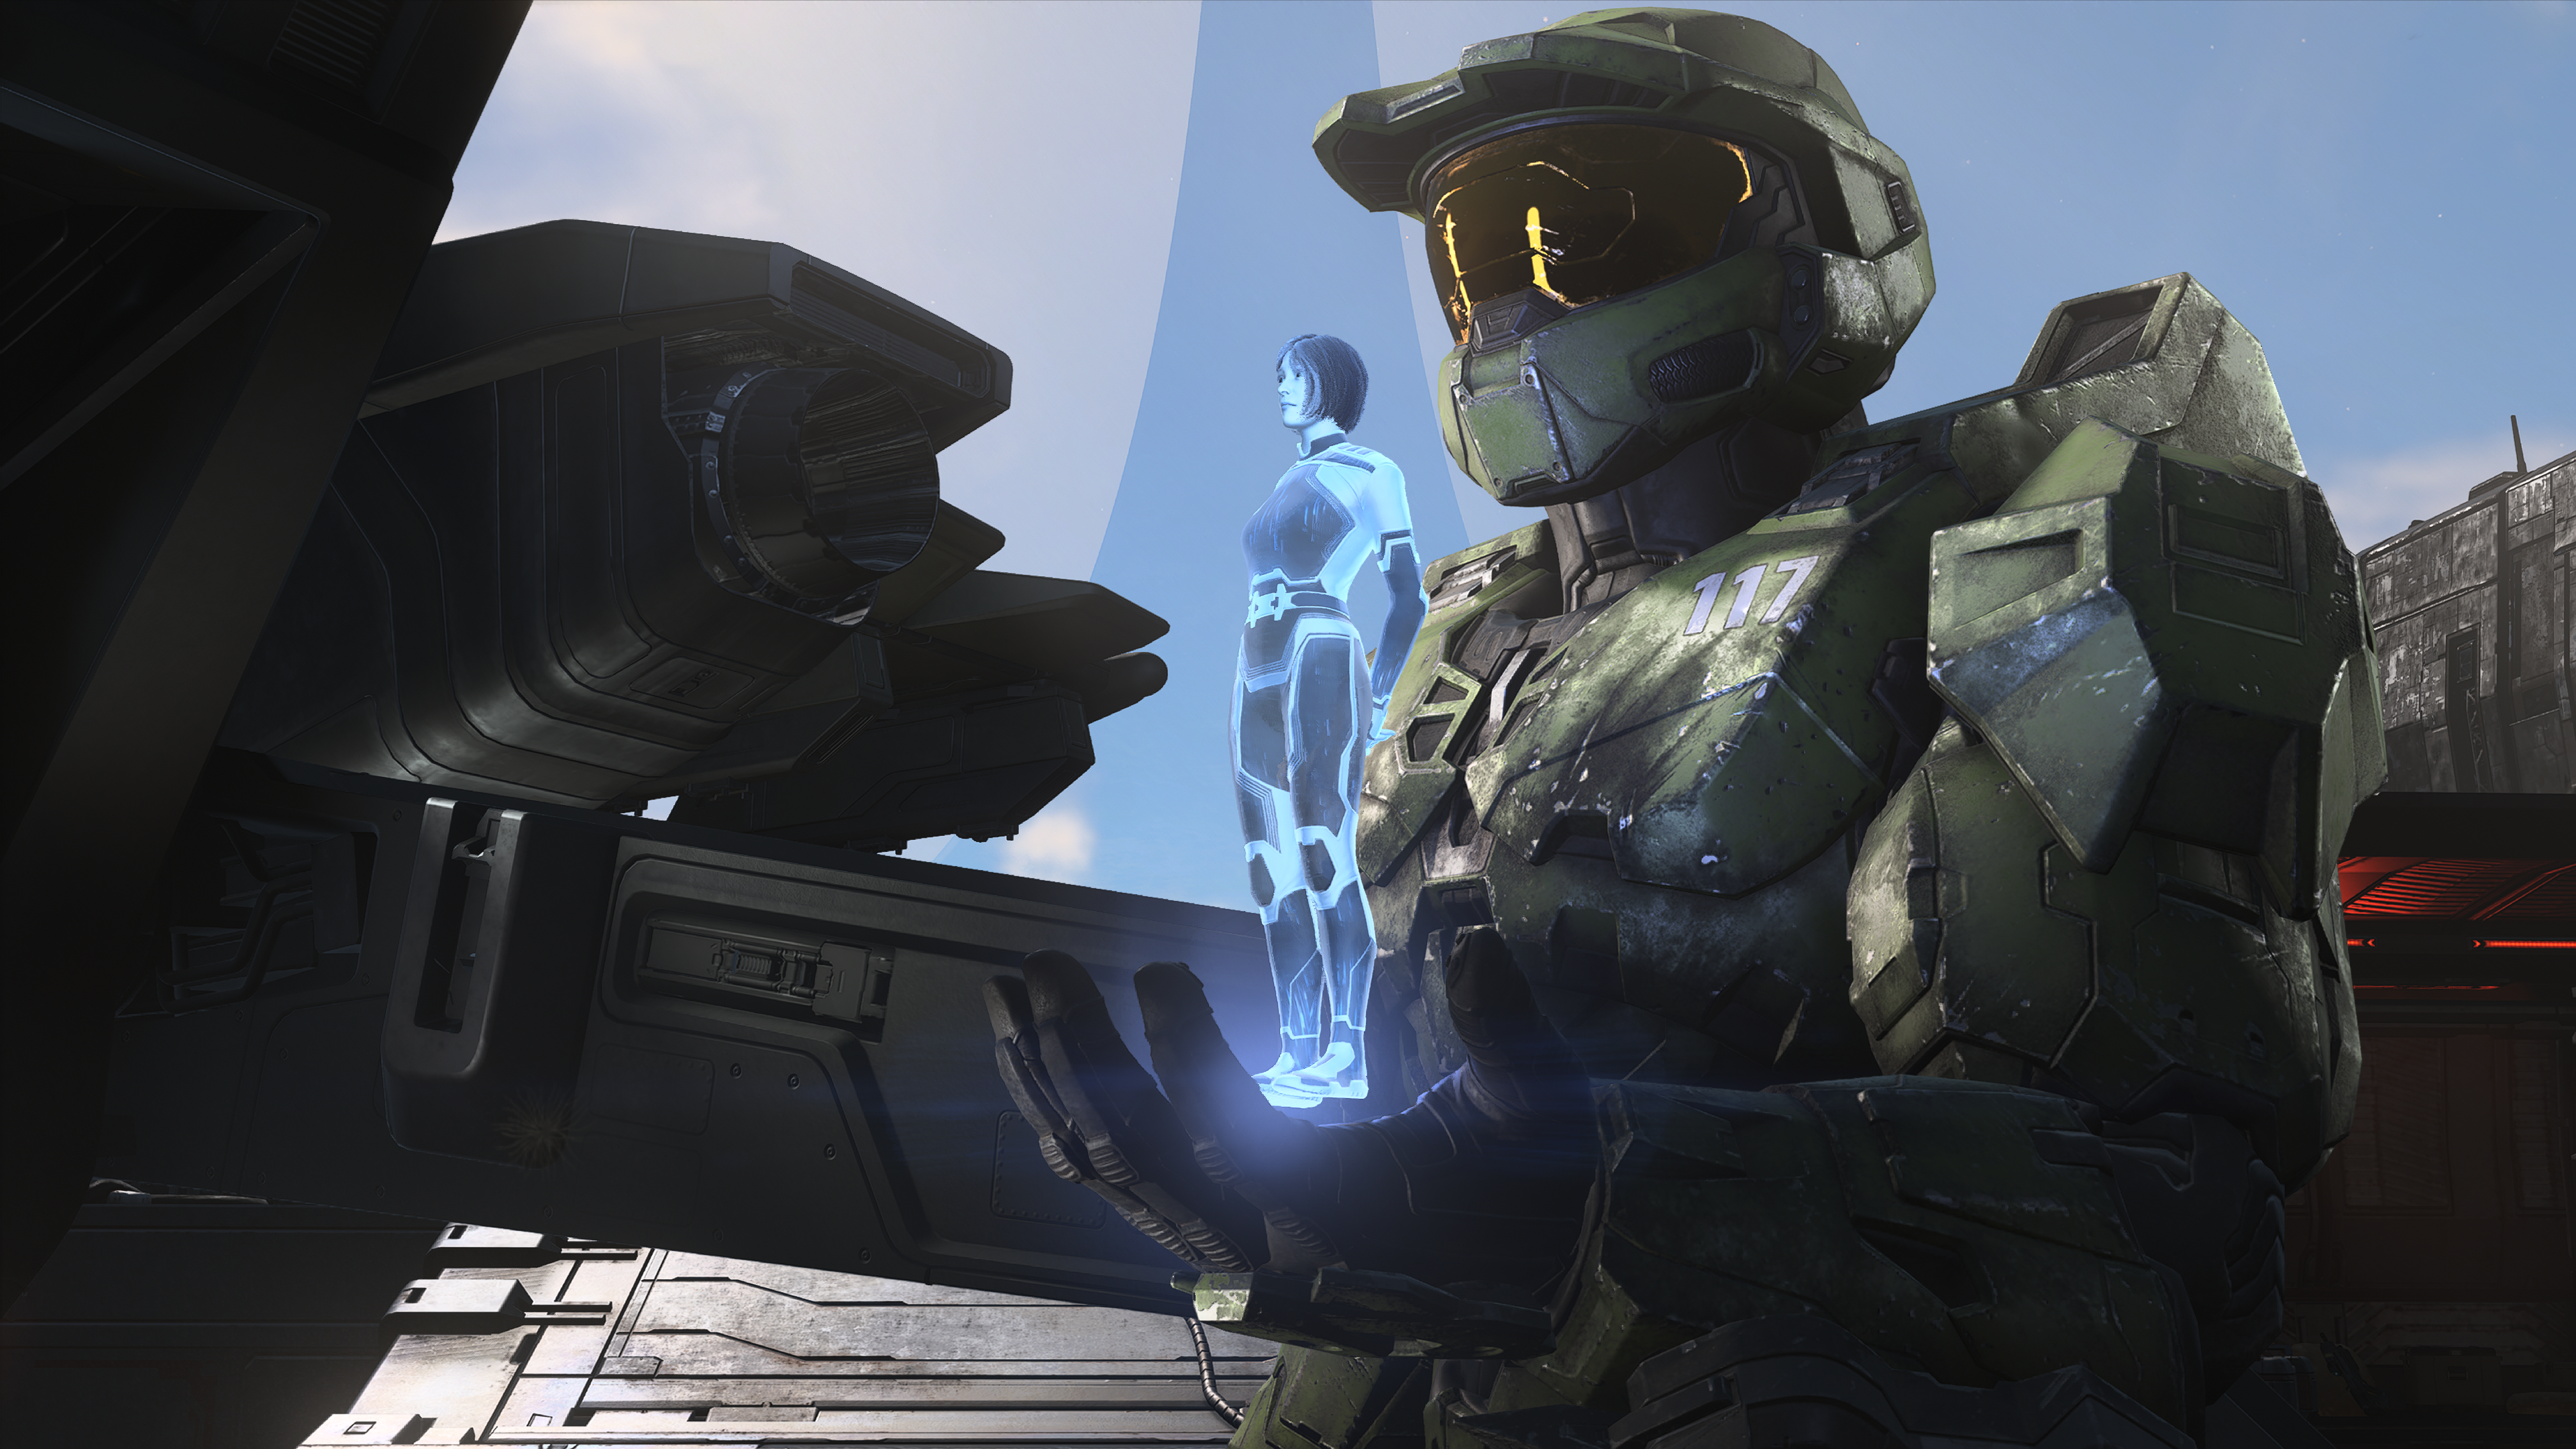 Série live action de Halo vai mostrar o rosto do Master Chief